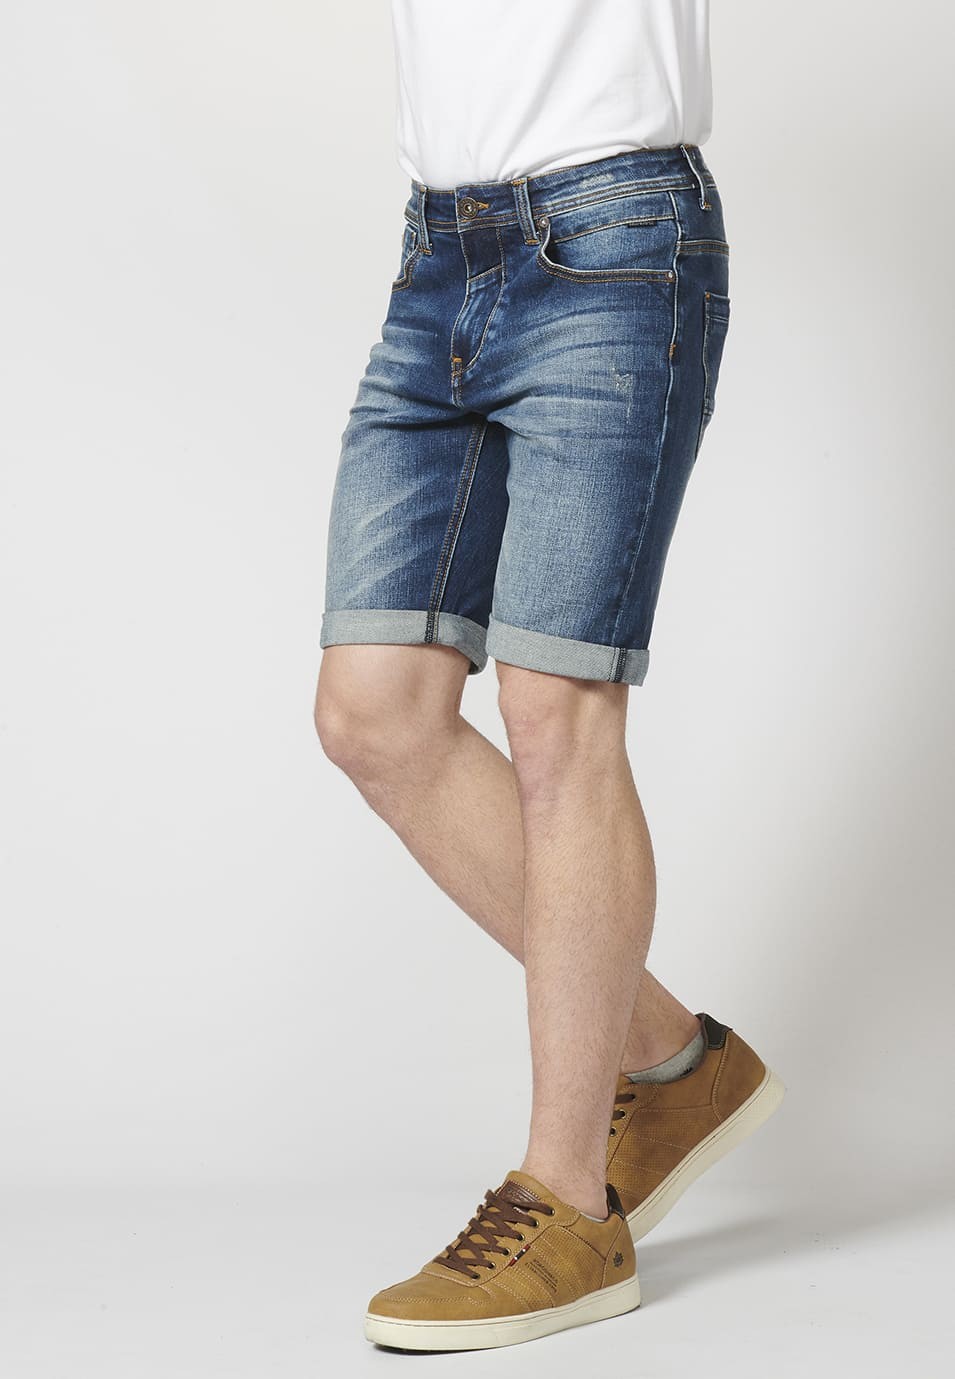 Pantalon corto denim regular fit con cinco bolsillos y efecto gastado para Hombre 1